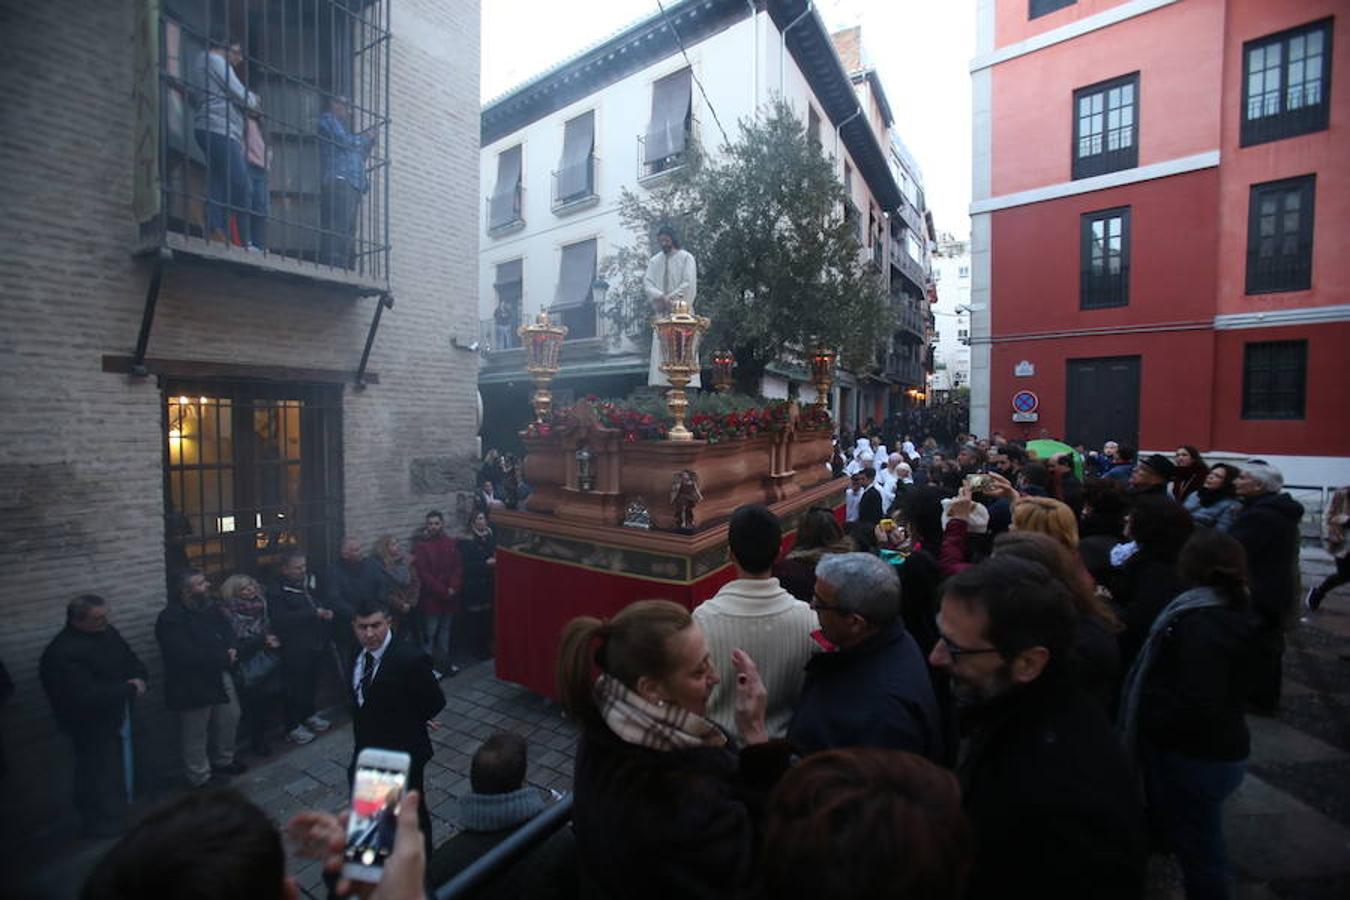 Borriquilla, Cautivo, Santa Centa, Maravillas y Despojado, hermandades de este Domingo de Ramos de Granada